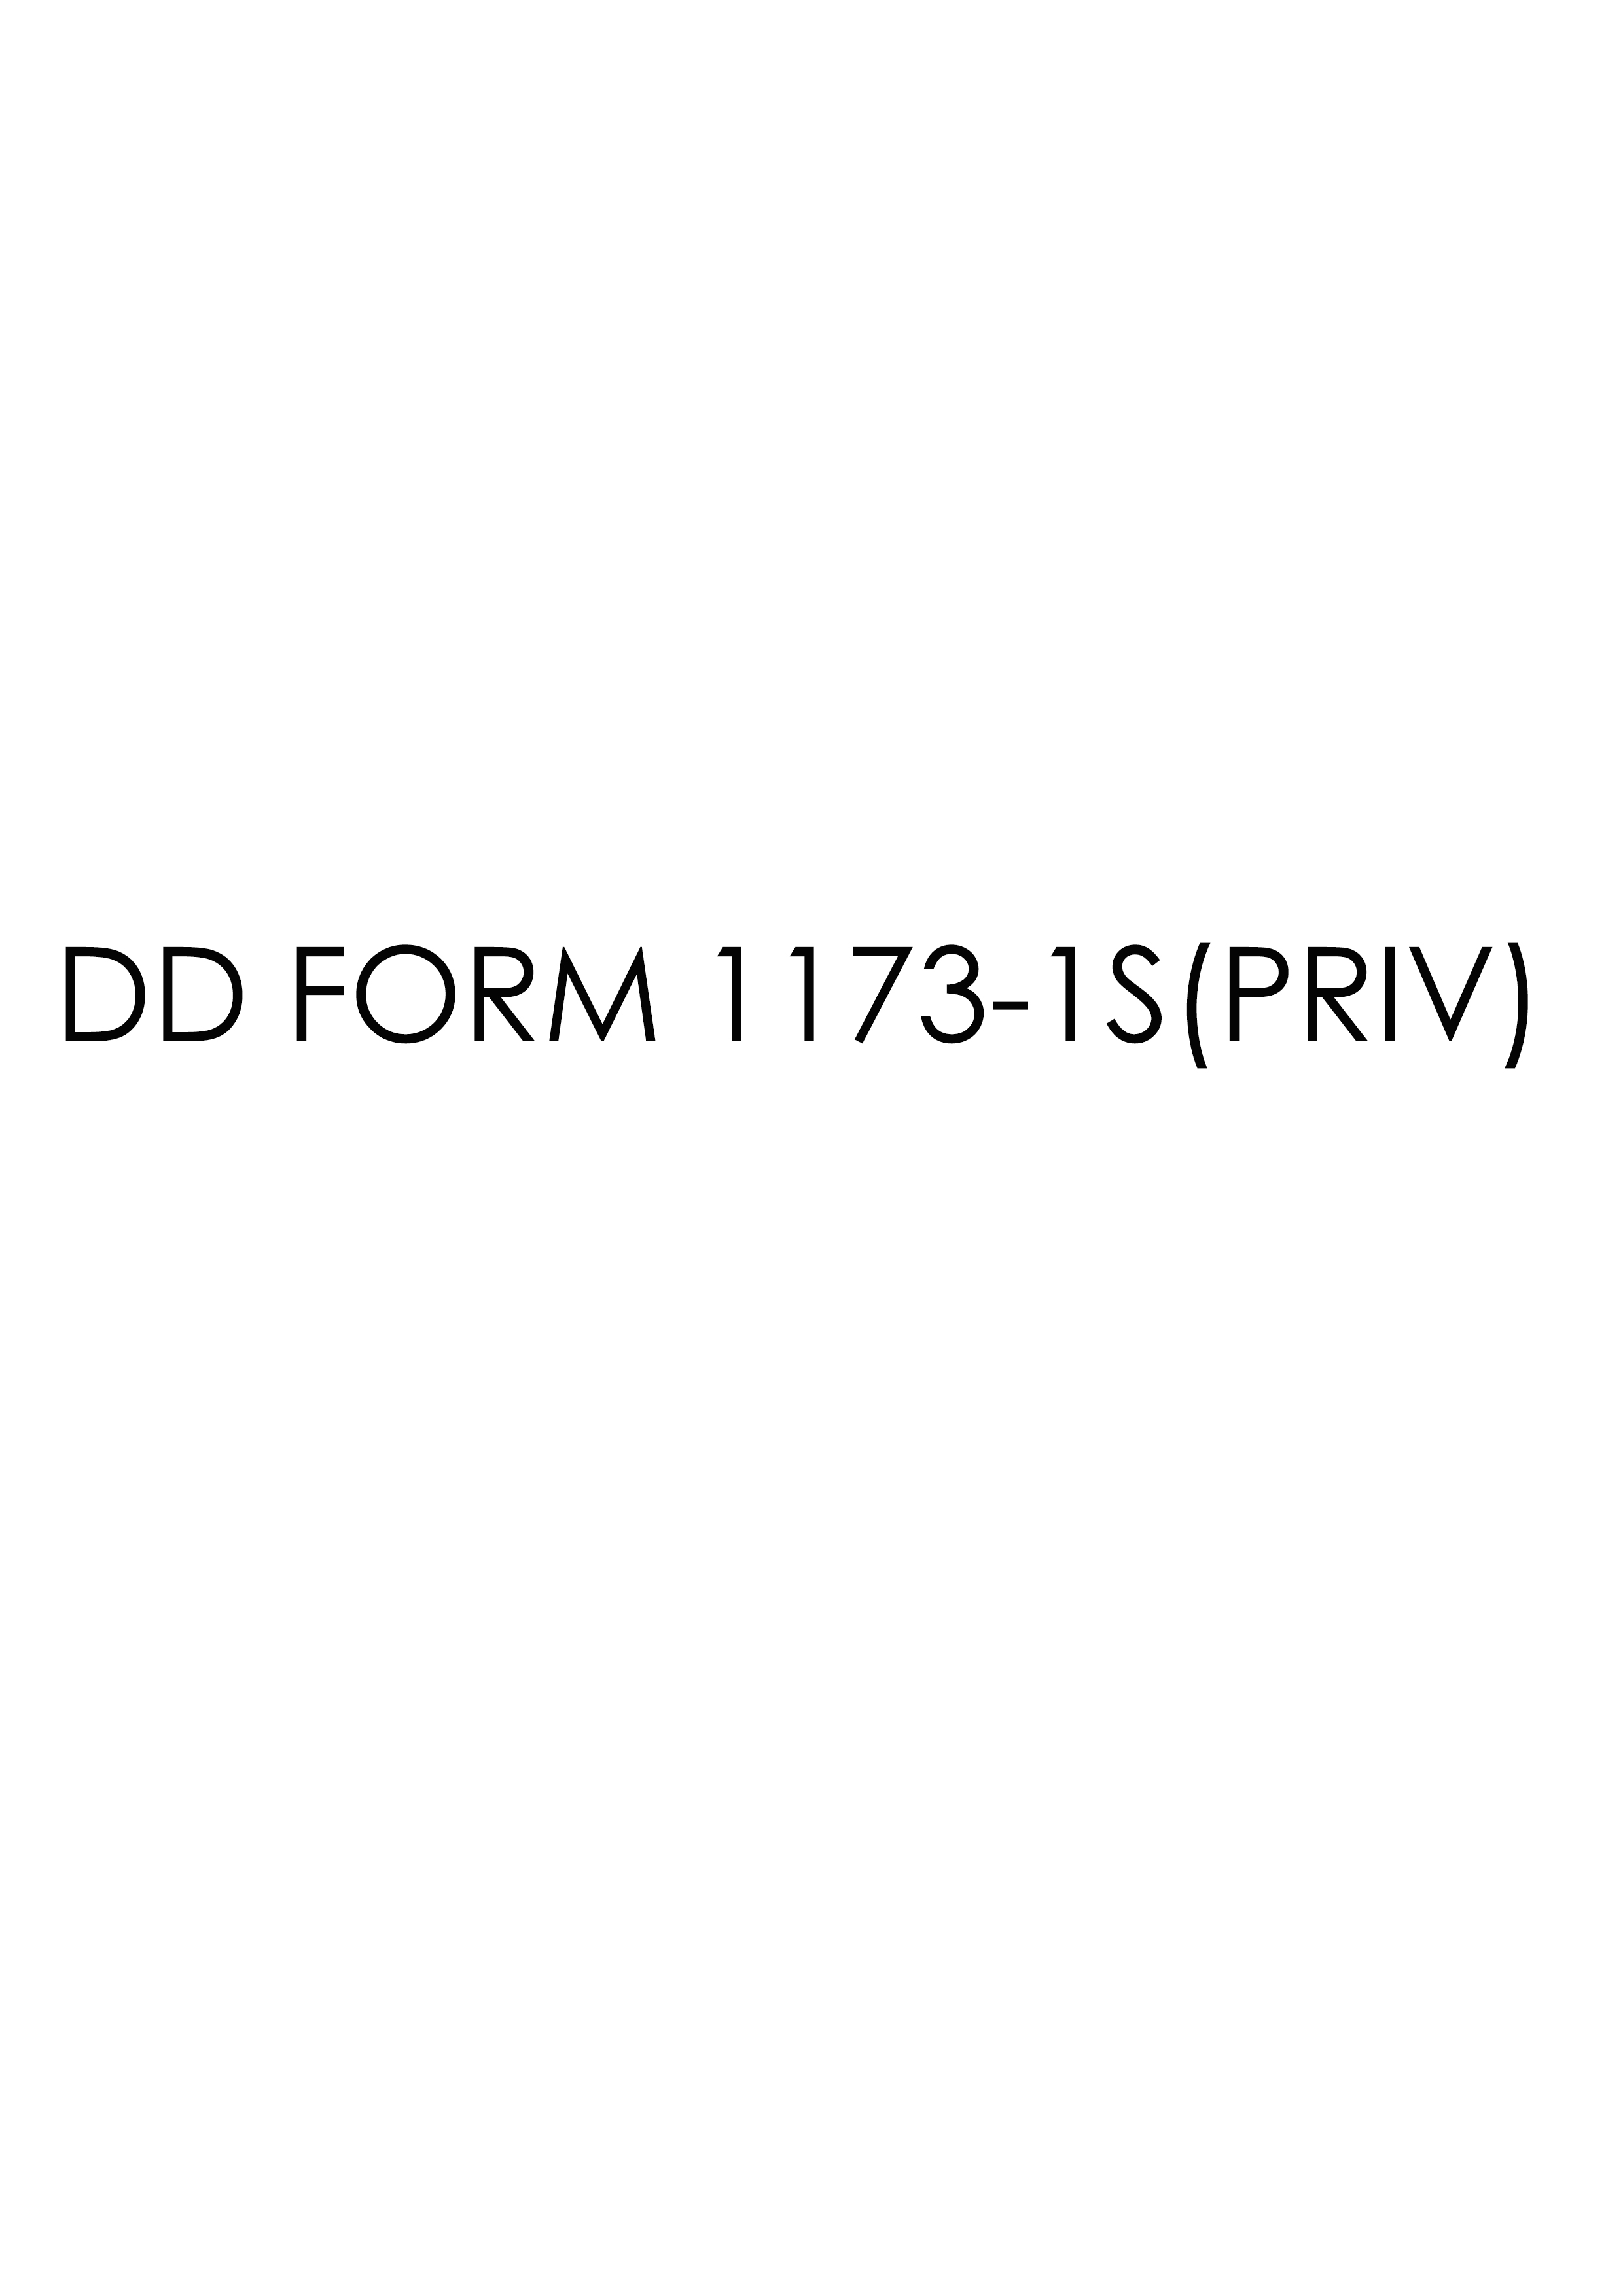 Download dd 1173-1S(PRIV) Form